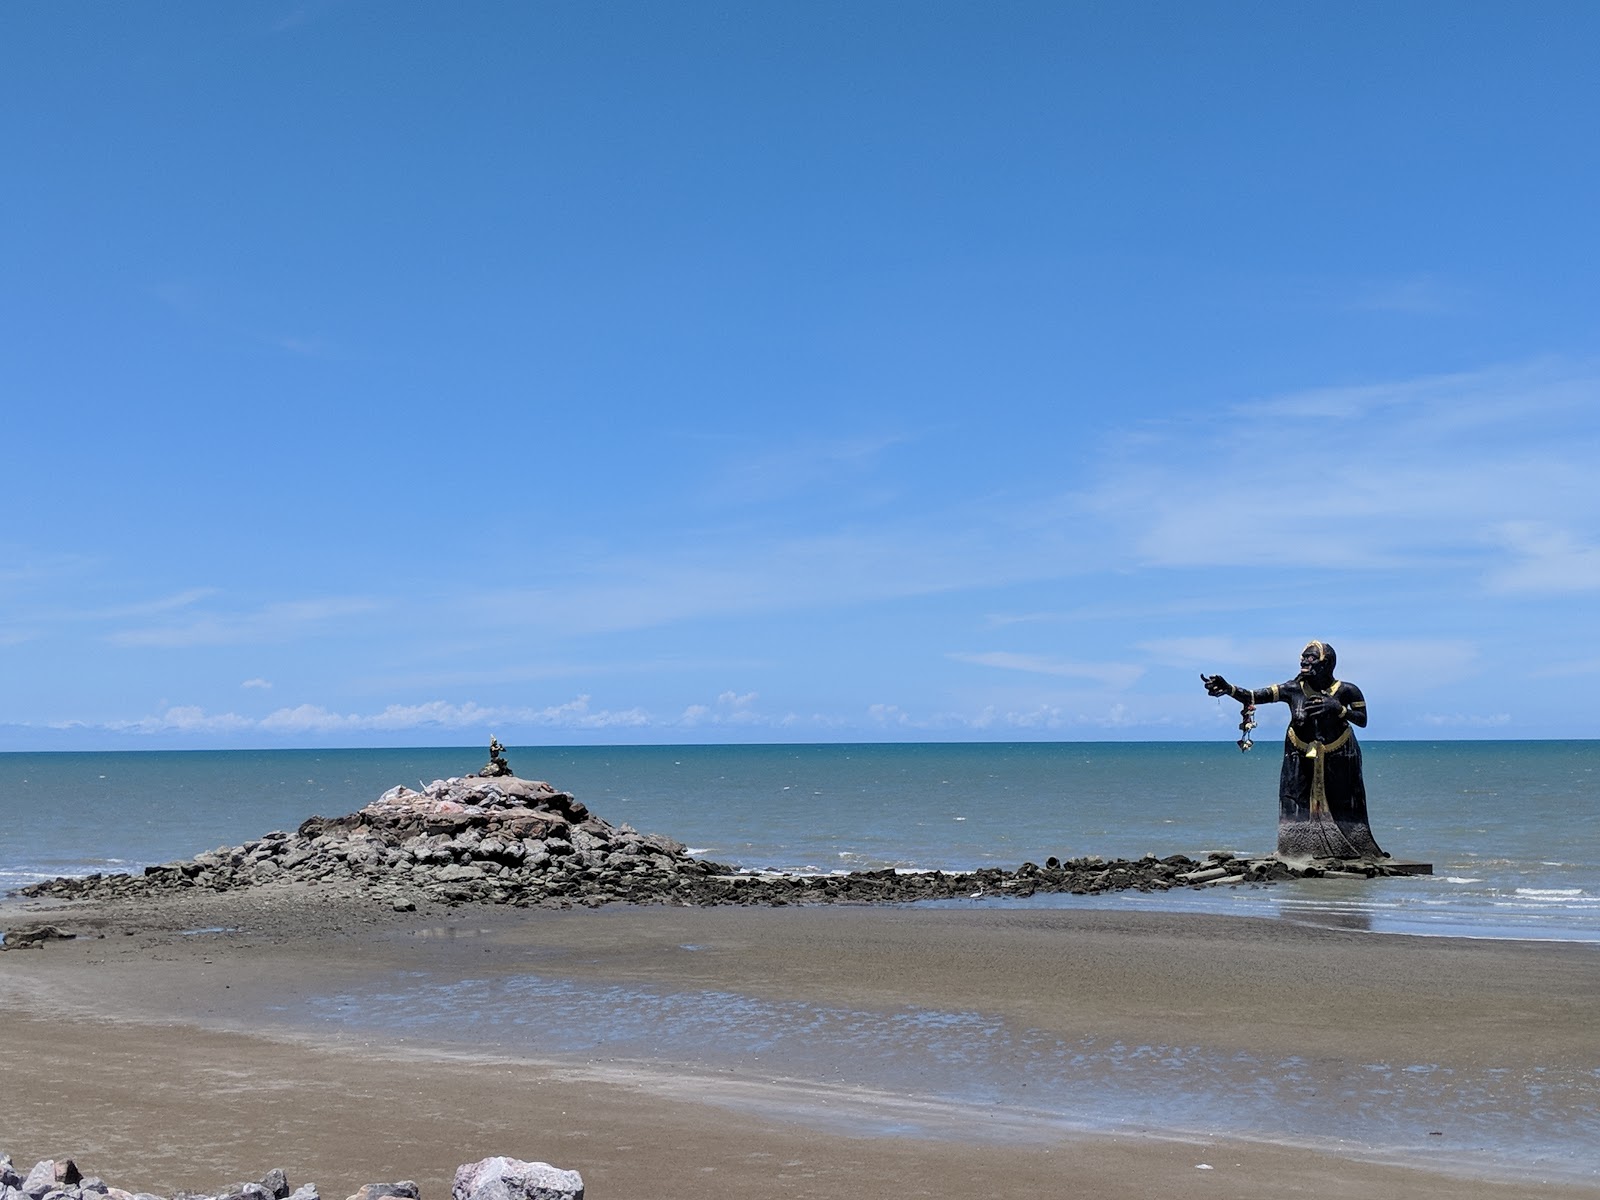 Hat Puek Tian Beach'in fotoğrafı geniş plaj ile birlikte